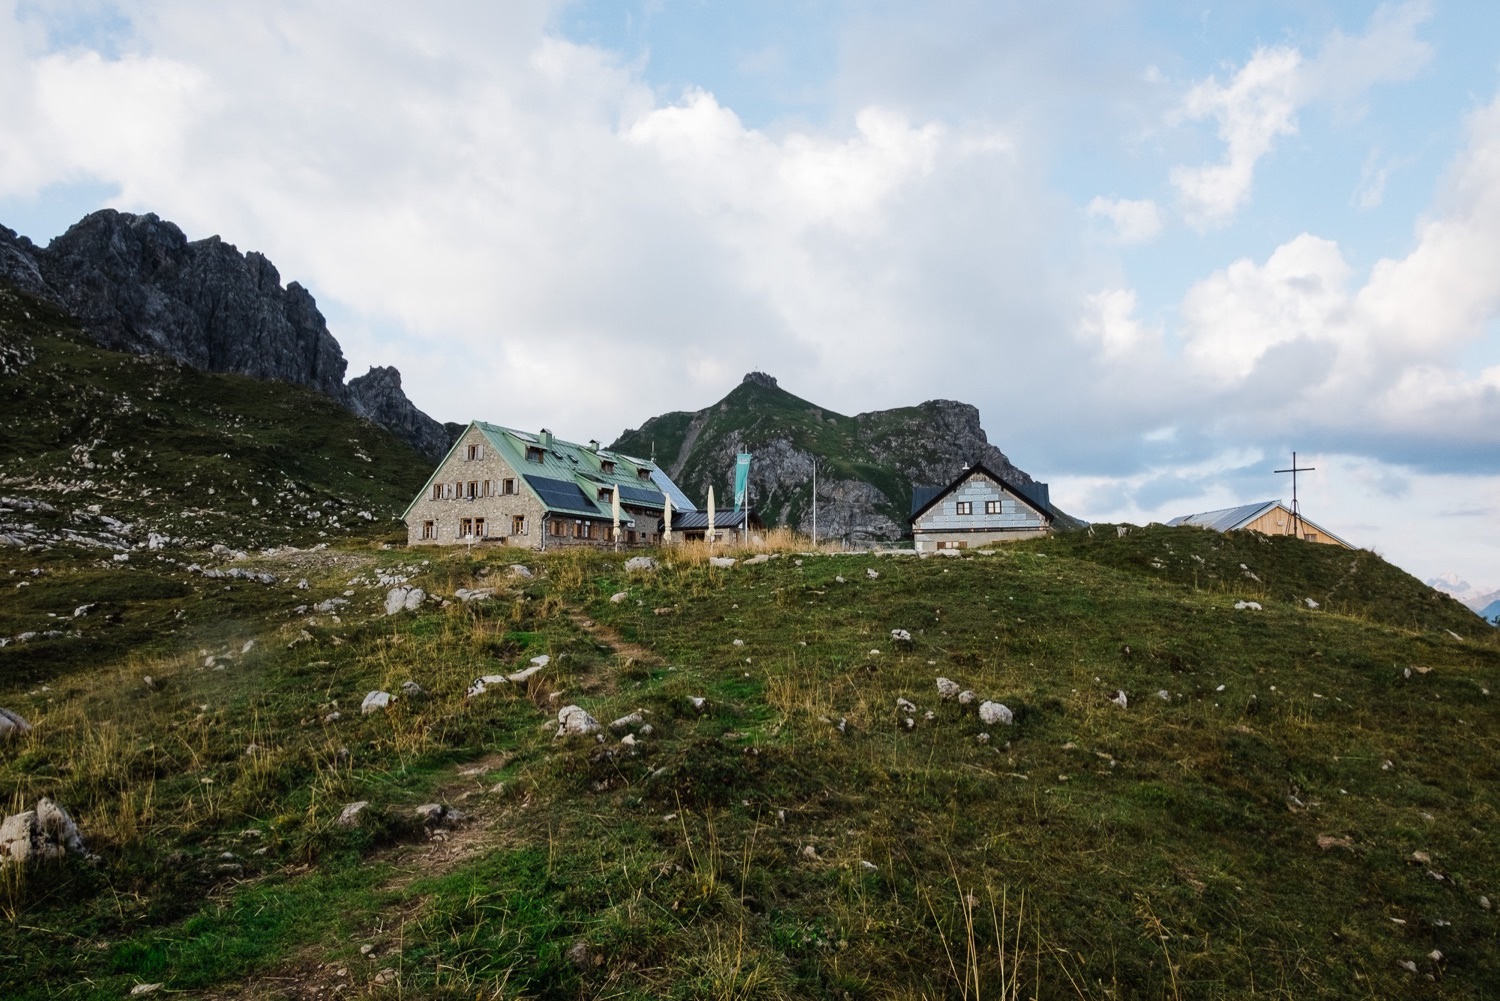 Wanderung zur Mindelheimer Hütte im Kleinwalsertal